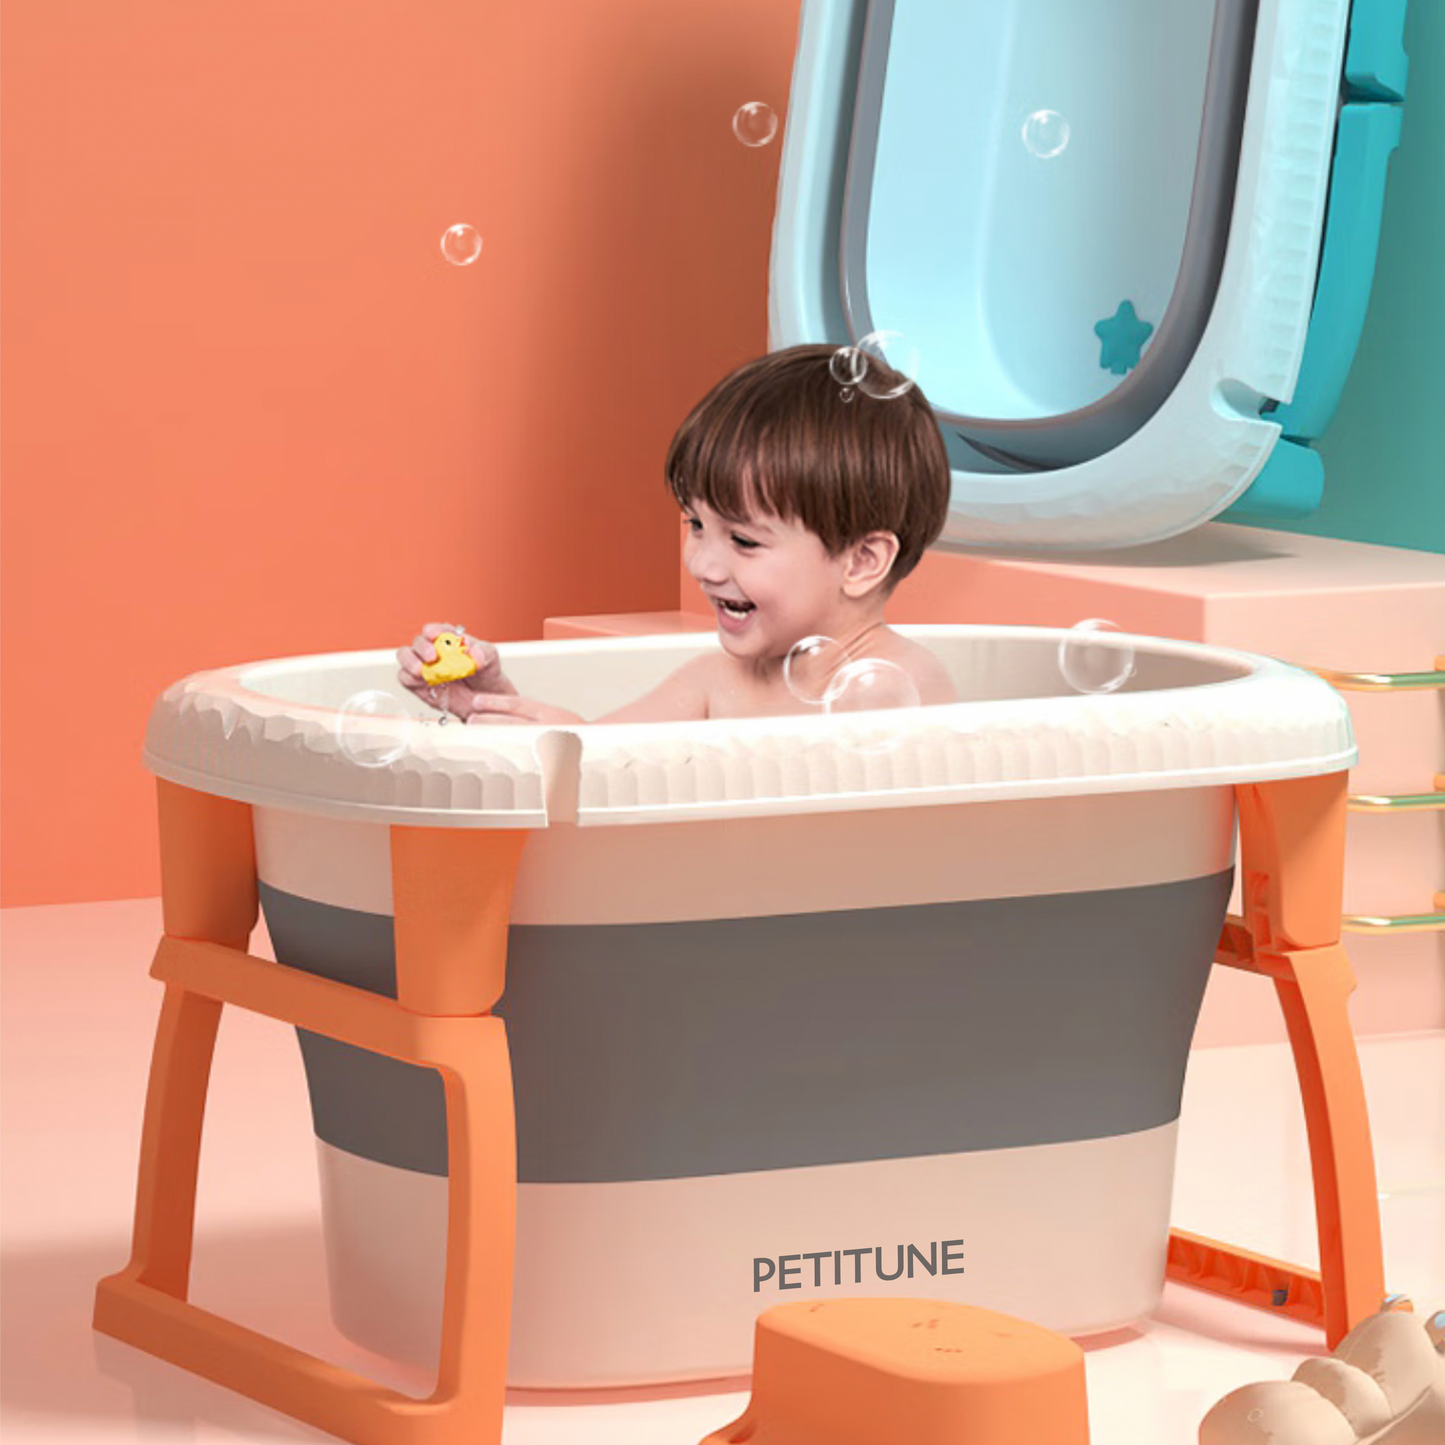 PETITUNE Diaper Disposal Pails, Foldable Bath Tubs for Babies, Inflatable Bath Tubs for Babies